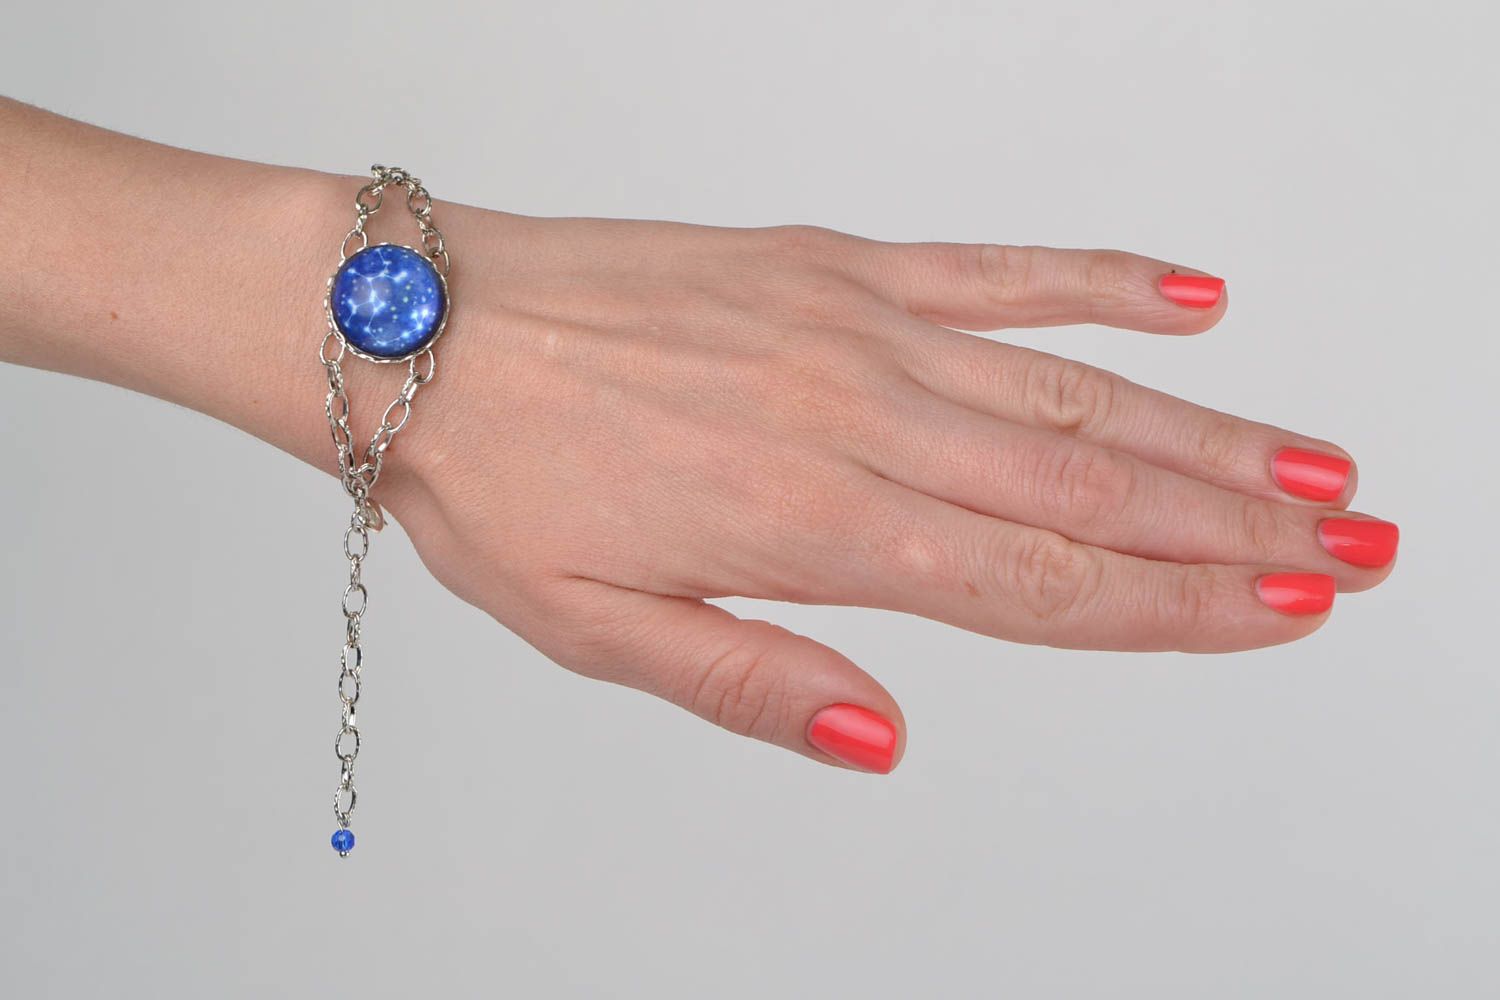 Zodiac wrist bracelet with chain and glass stylish handmade accessory photo 1